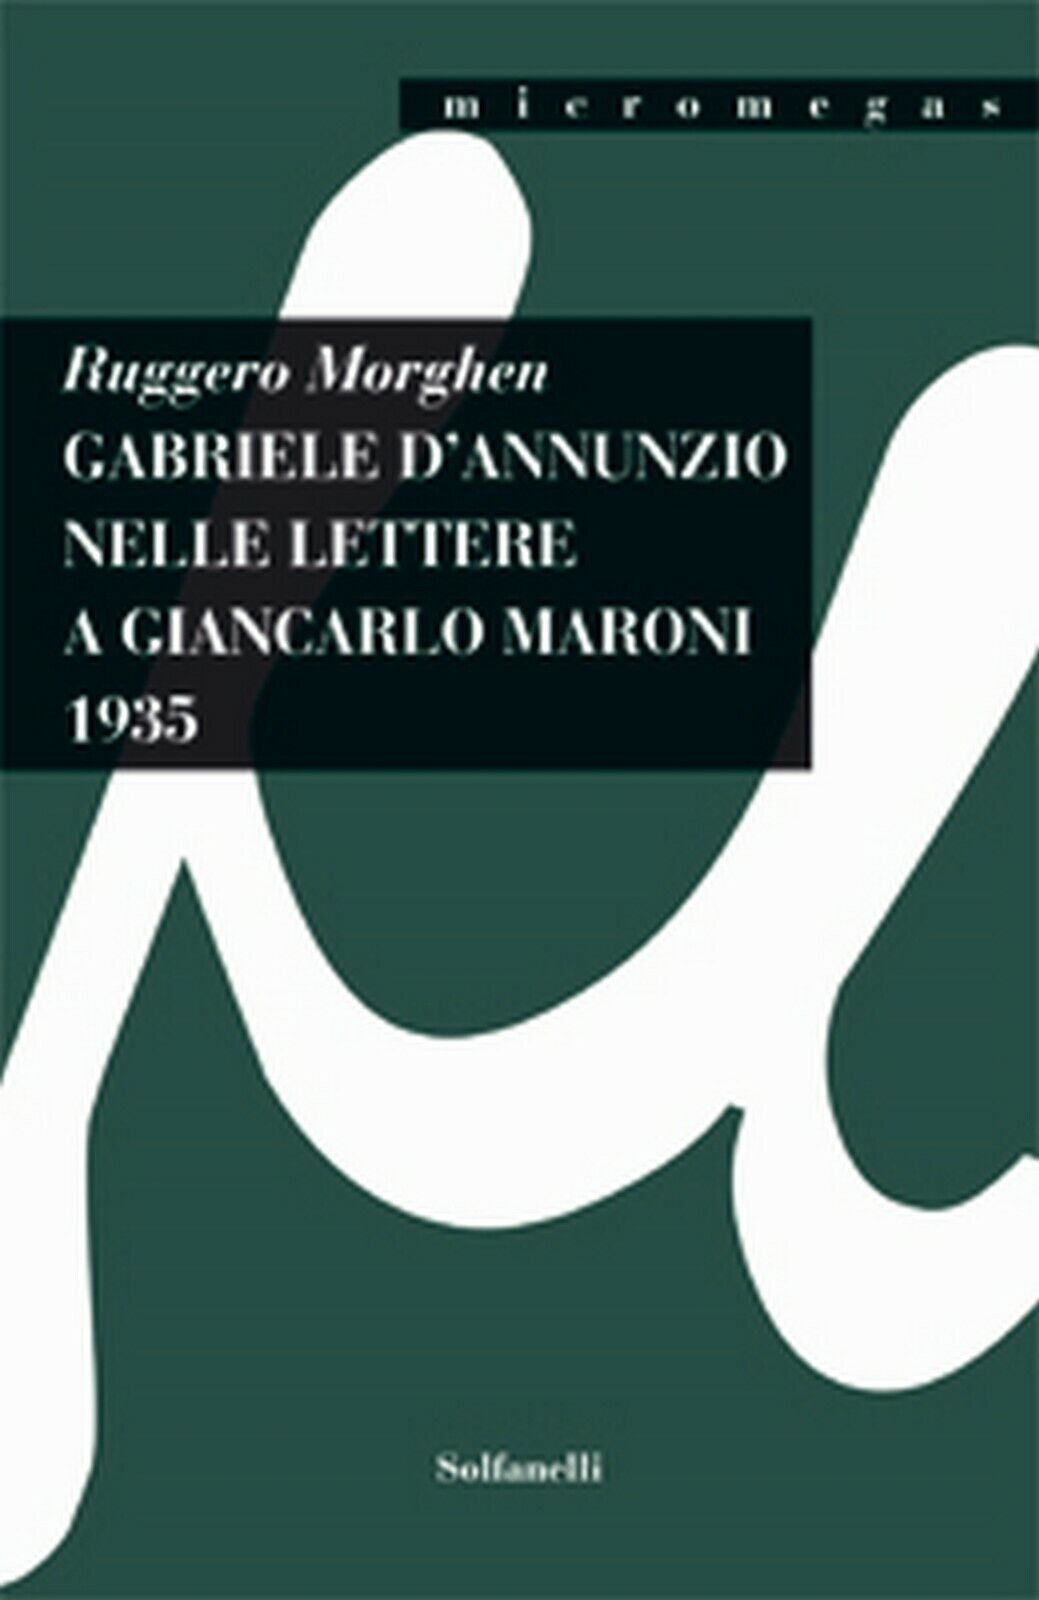 GABRIELE d'ANNUNZIO NELLE LETTERE A GIANCARLO MARONI (1935)  di Ruggero Morghen